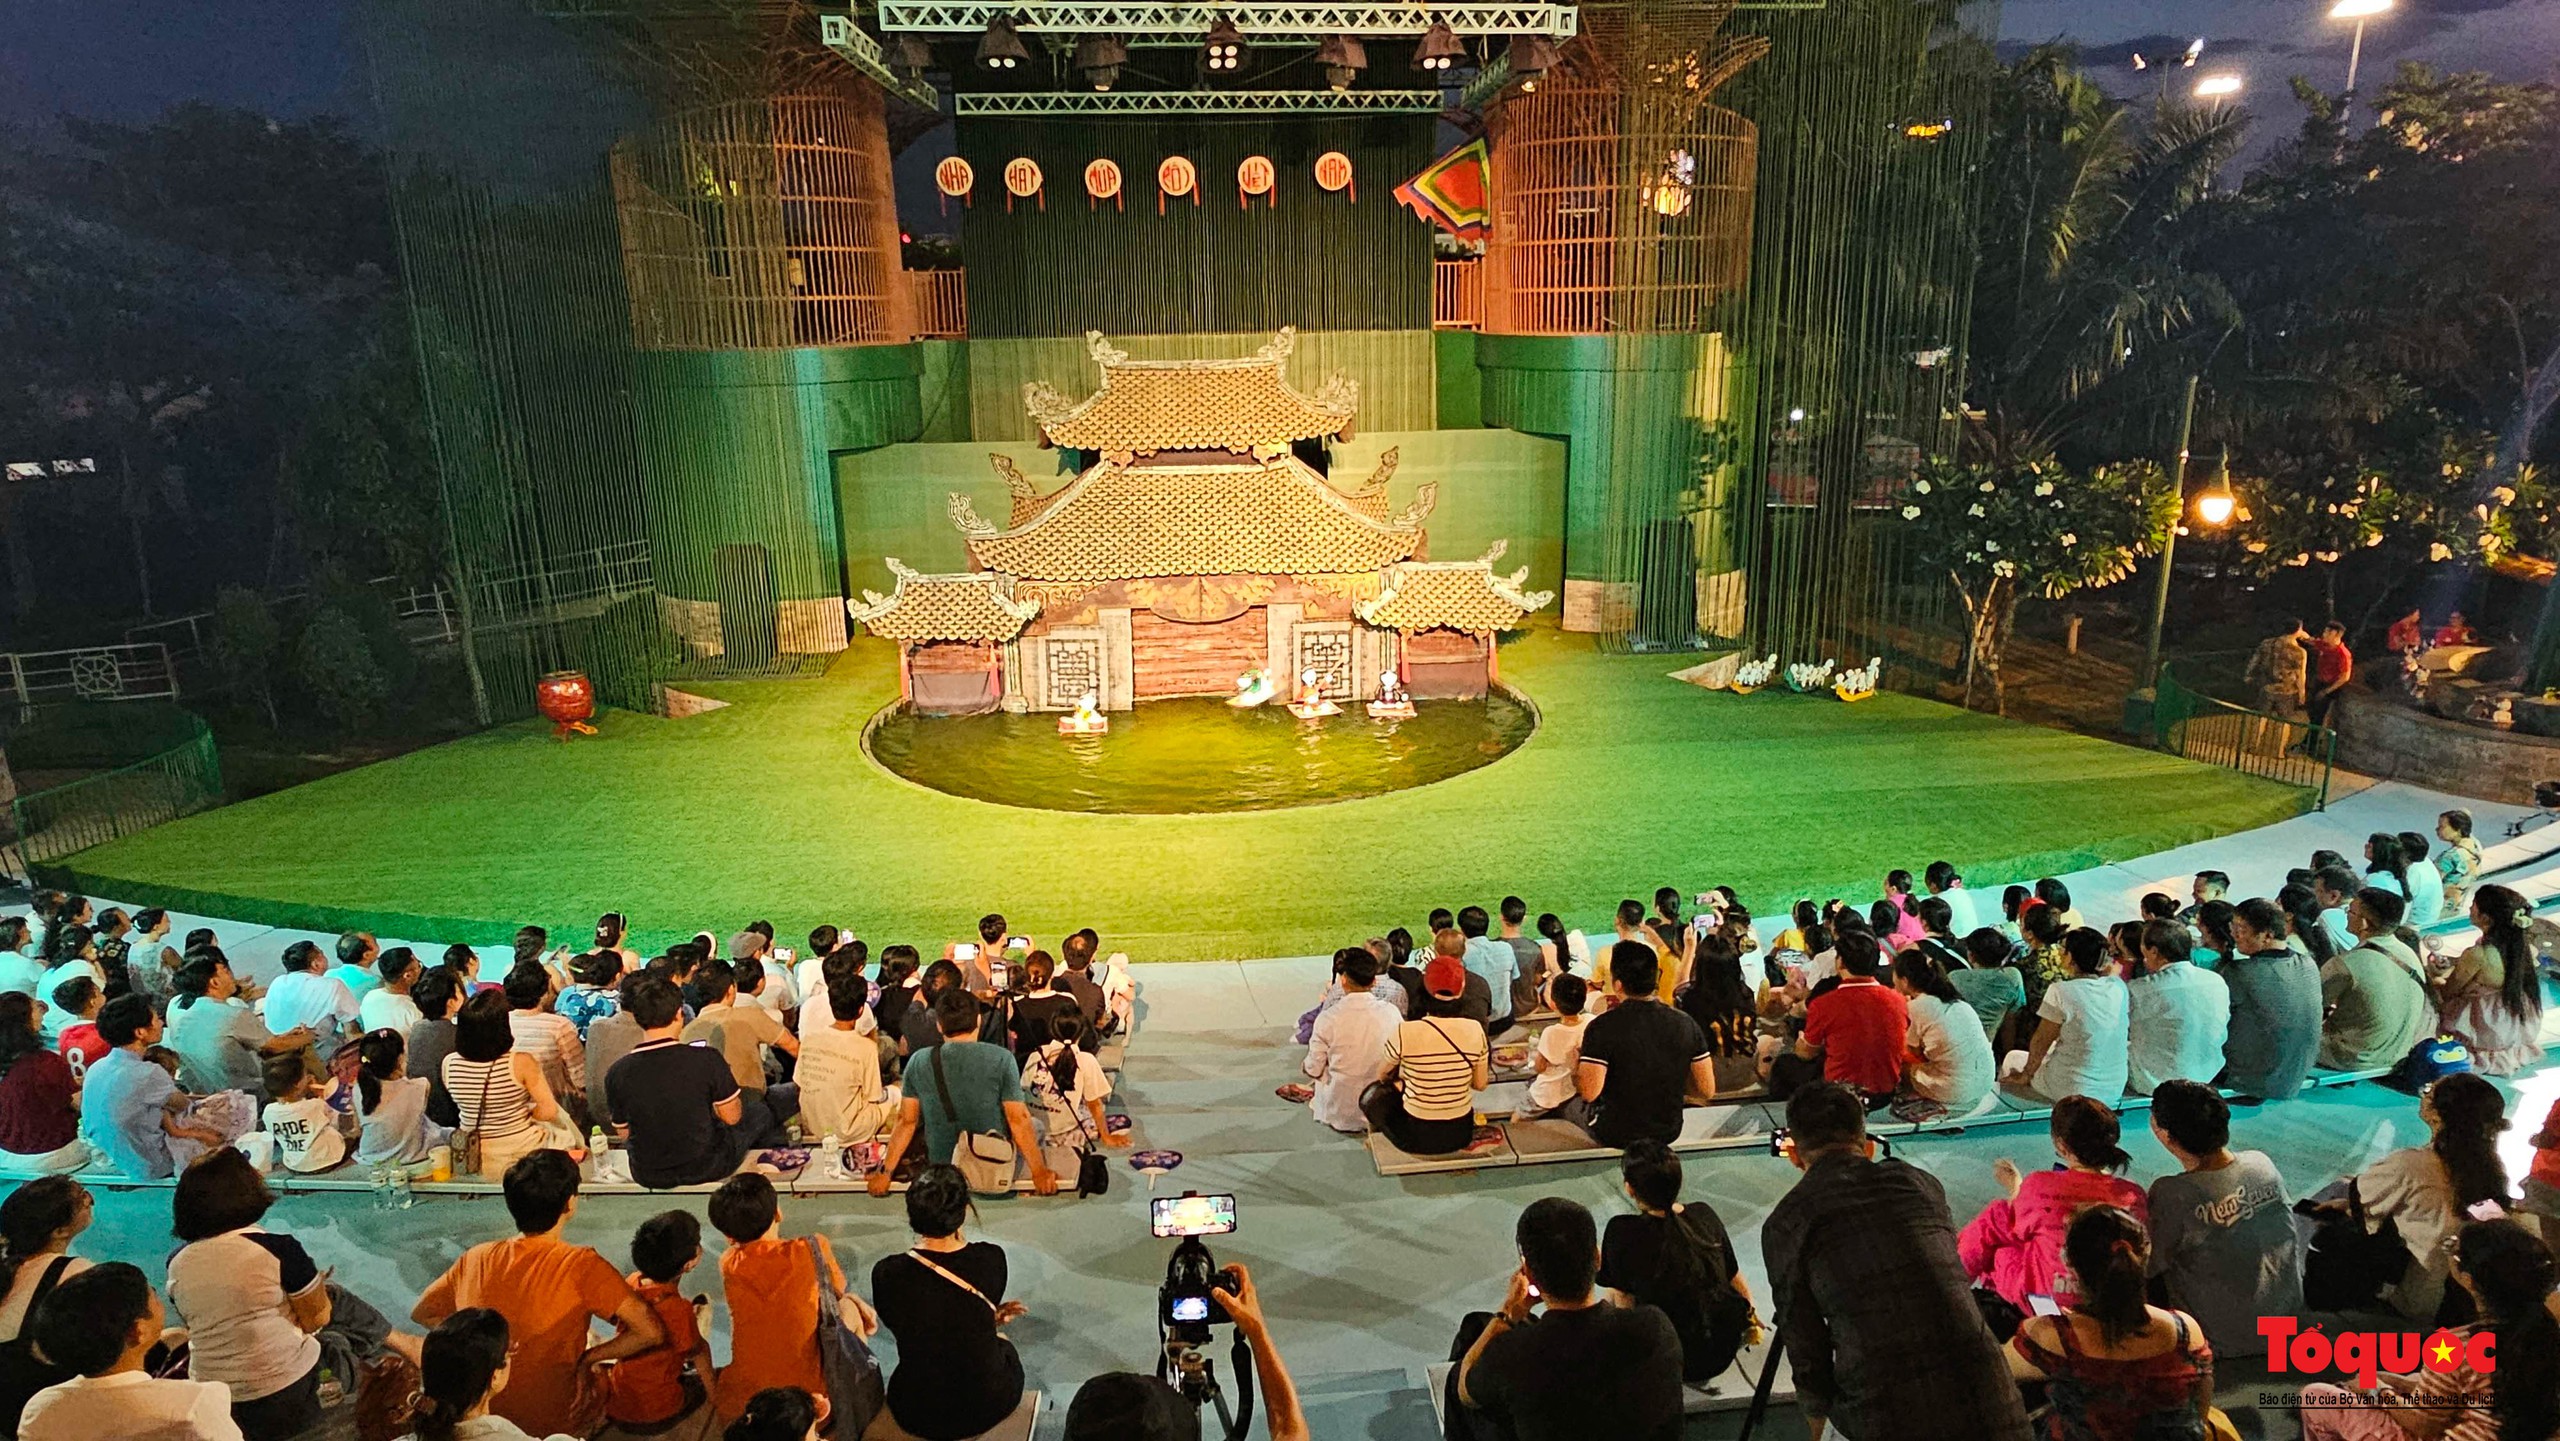 Du khách thích thú khám phá dòng chảy văn hóa Việt tại nhà hát múa rối lớn nhất miền Trung - Ảnh 1.